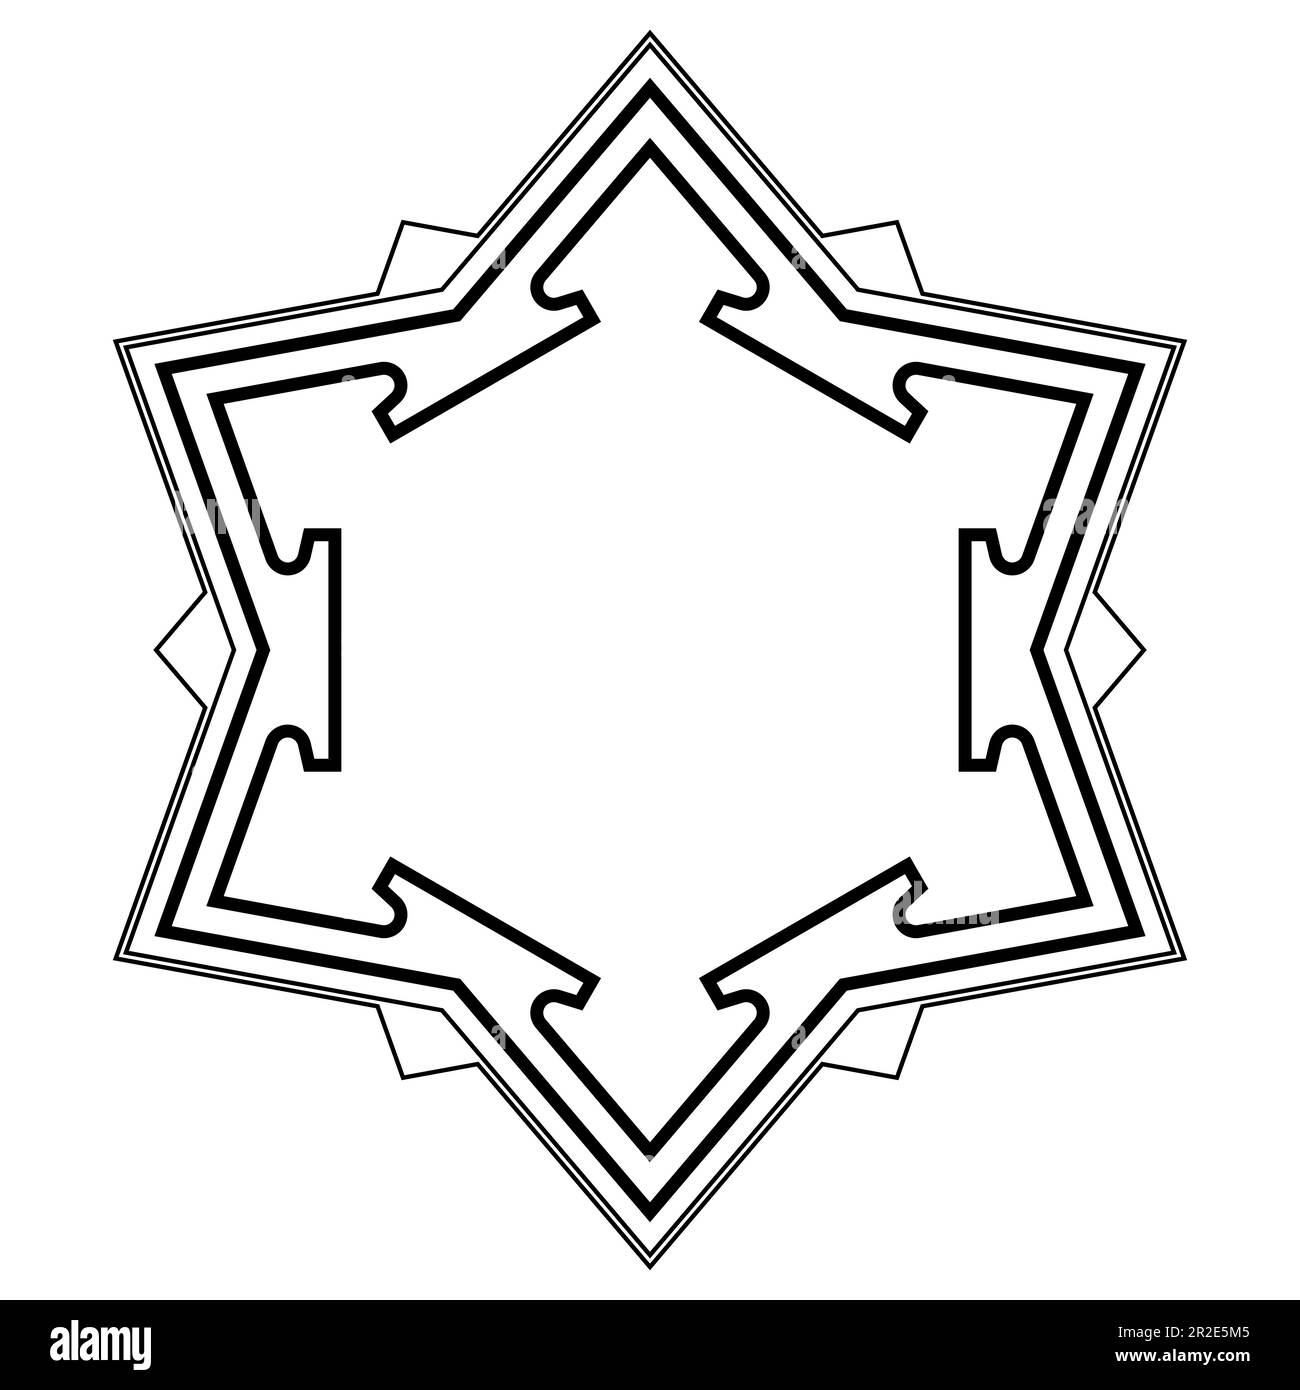 Motif de fort de bastion hexagonal. Structure de base et de plan des murs extérieurs d'un fort à six étoiles pointues, avec des ravelins, les fortifications triangulaires. Banque D'Images